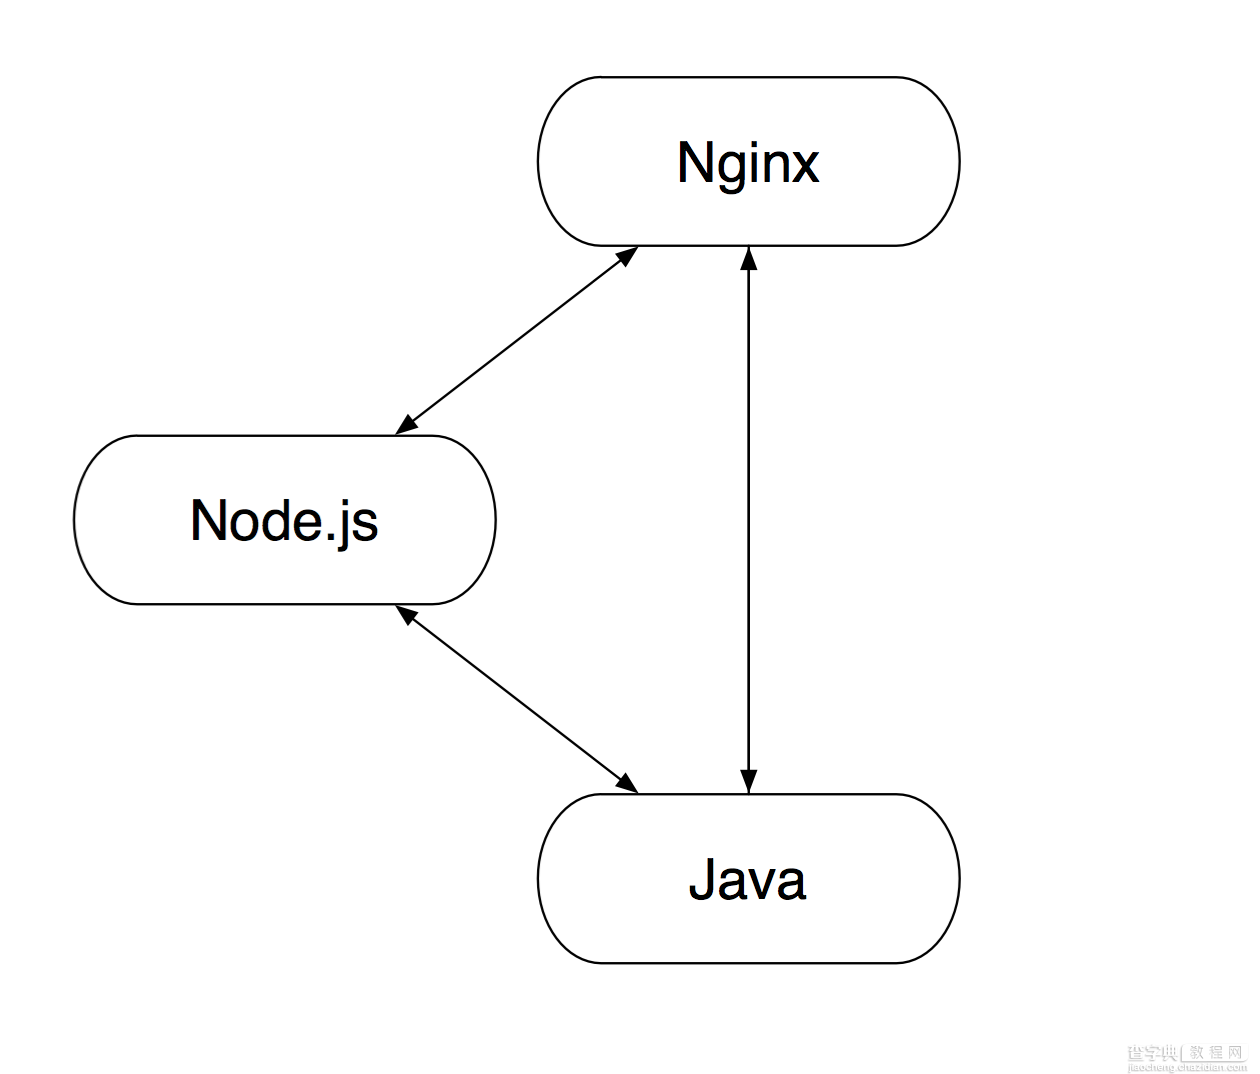 基于NodeJS的前后端分离的思考与实践（六）Nginx + Node.js + Java 的软件栈部署实践3